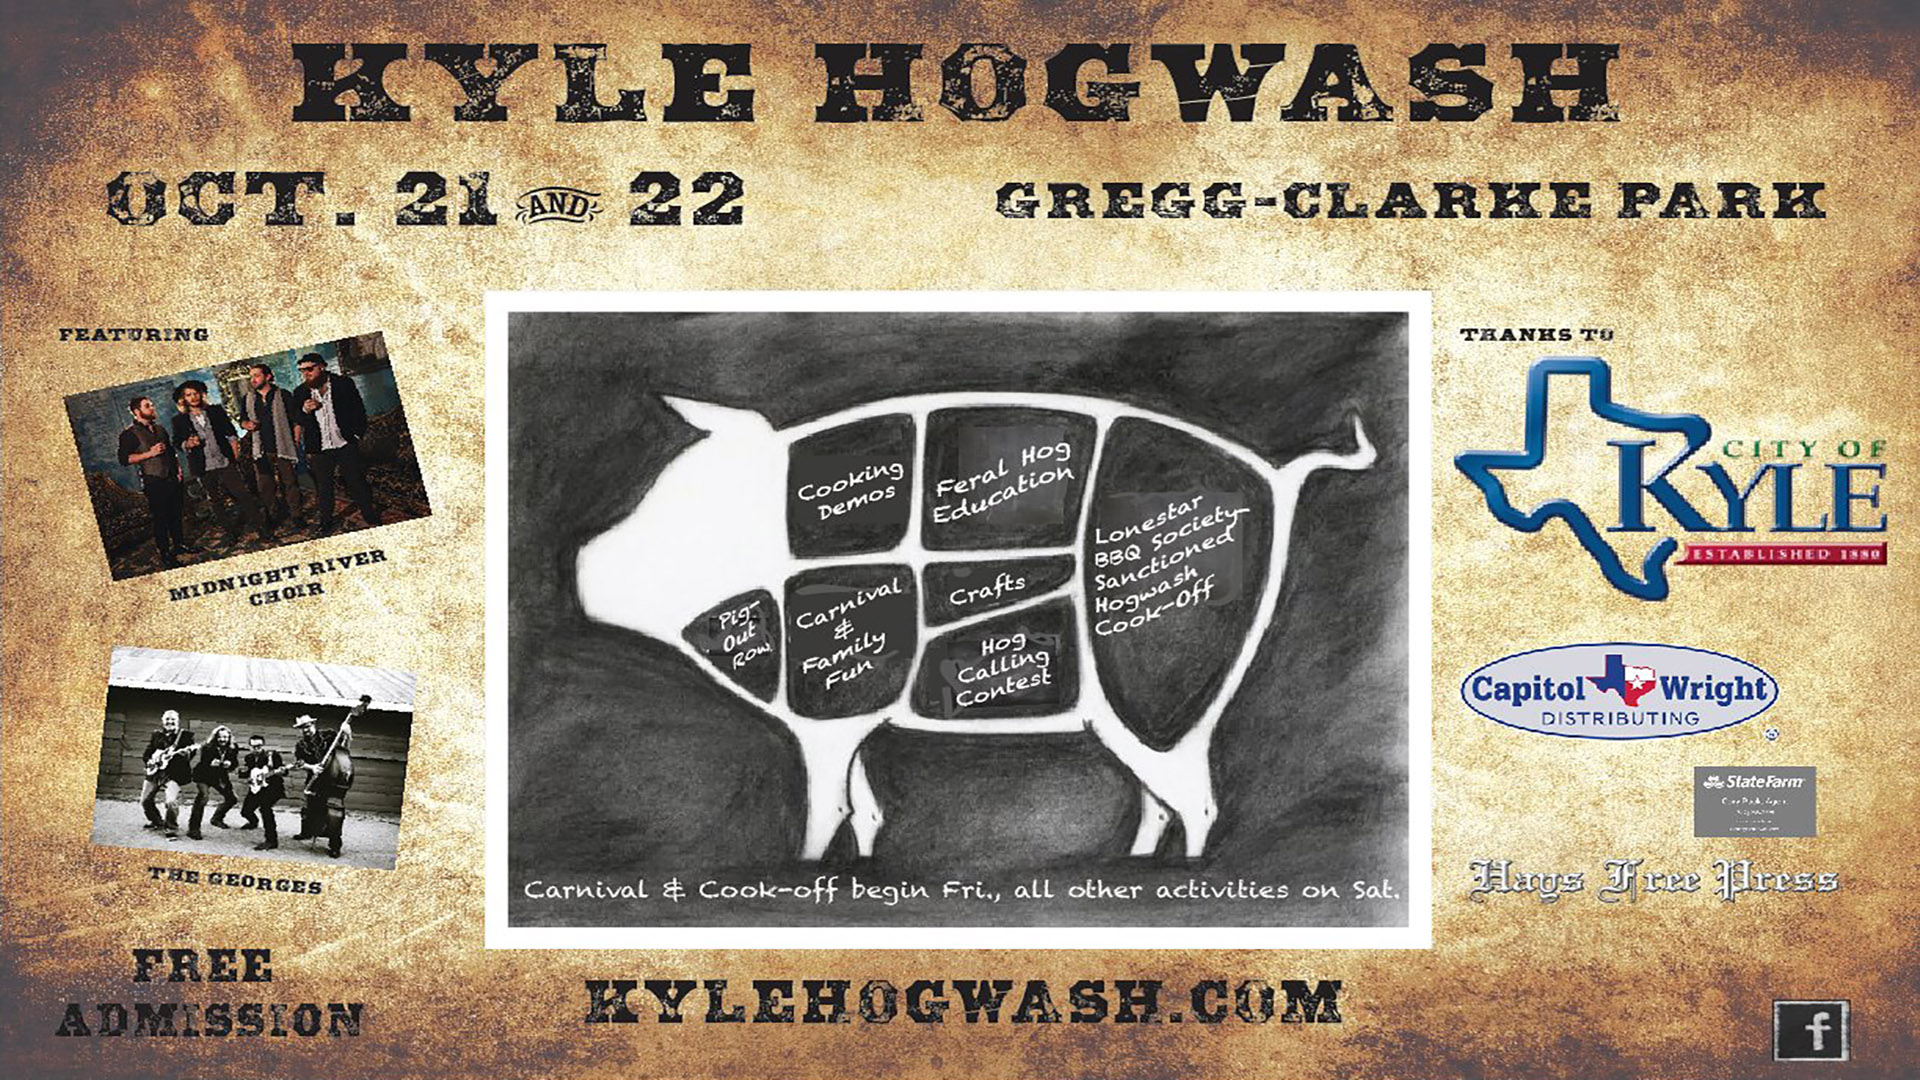 Kyle Hogwash Festival & BBQ Cook-Off